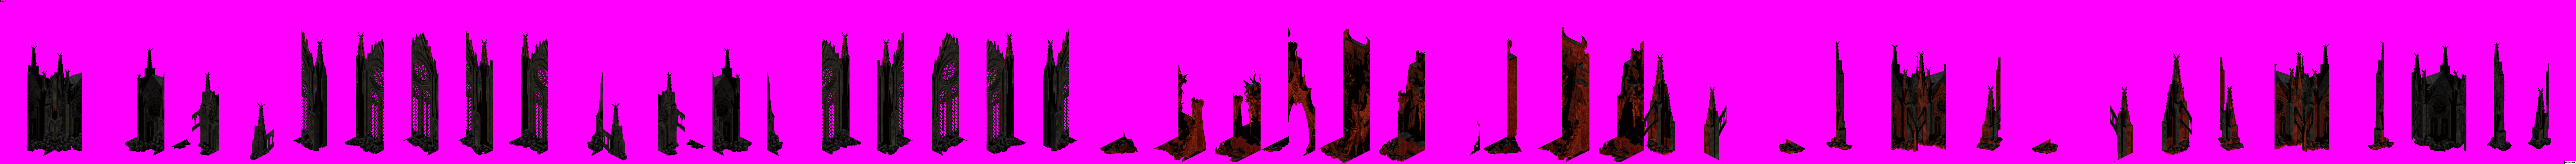 Diablo 2 / Diablo 2: Lord of Destruction - Diablo's Lair Wall